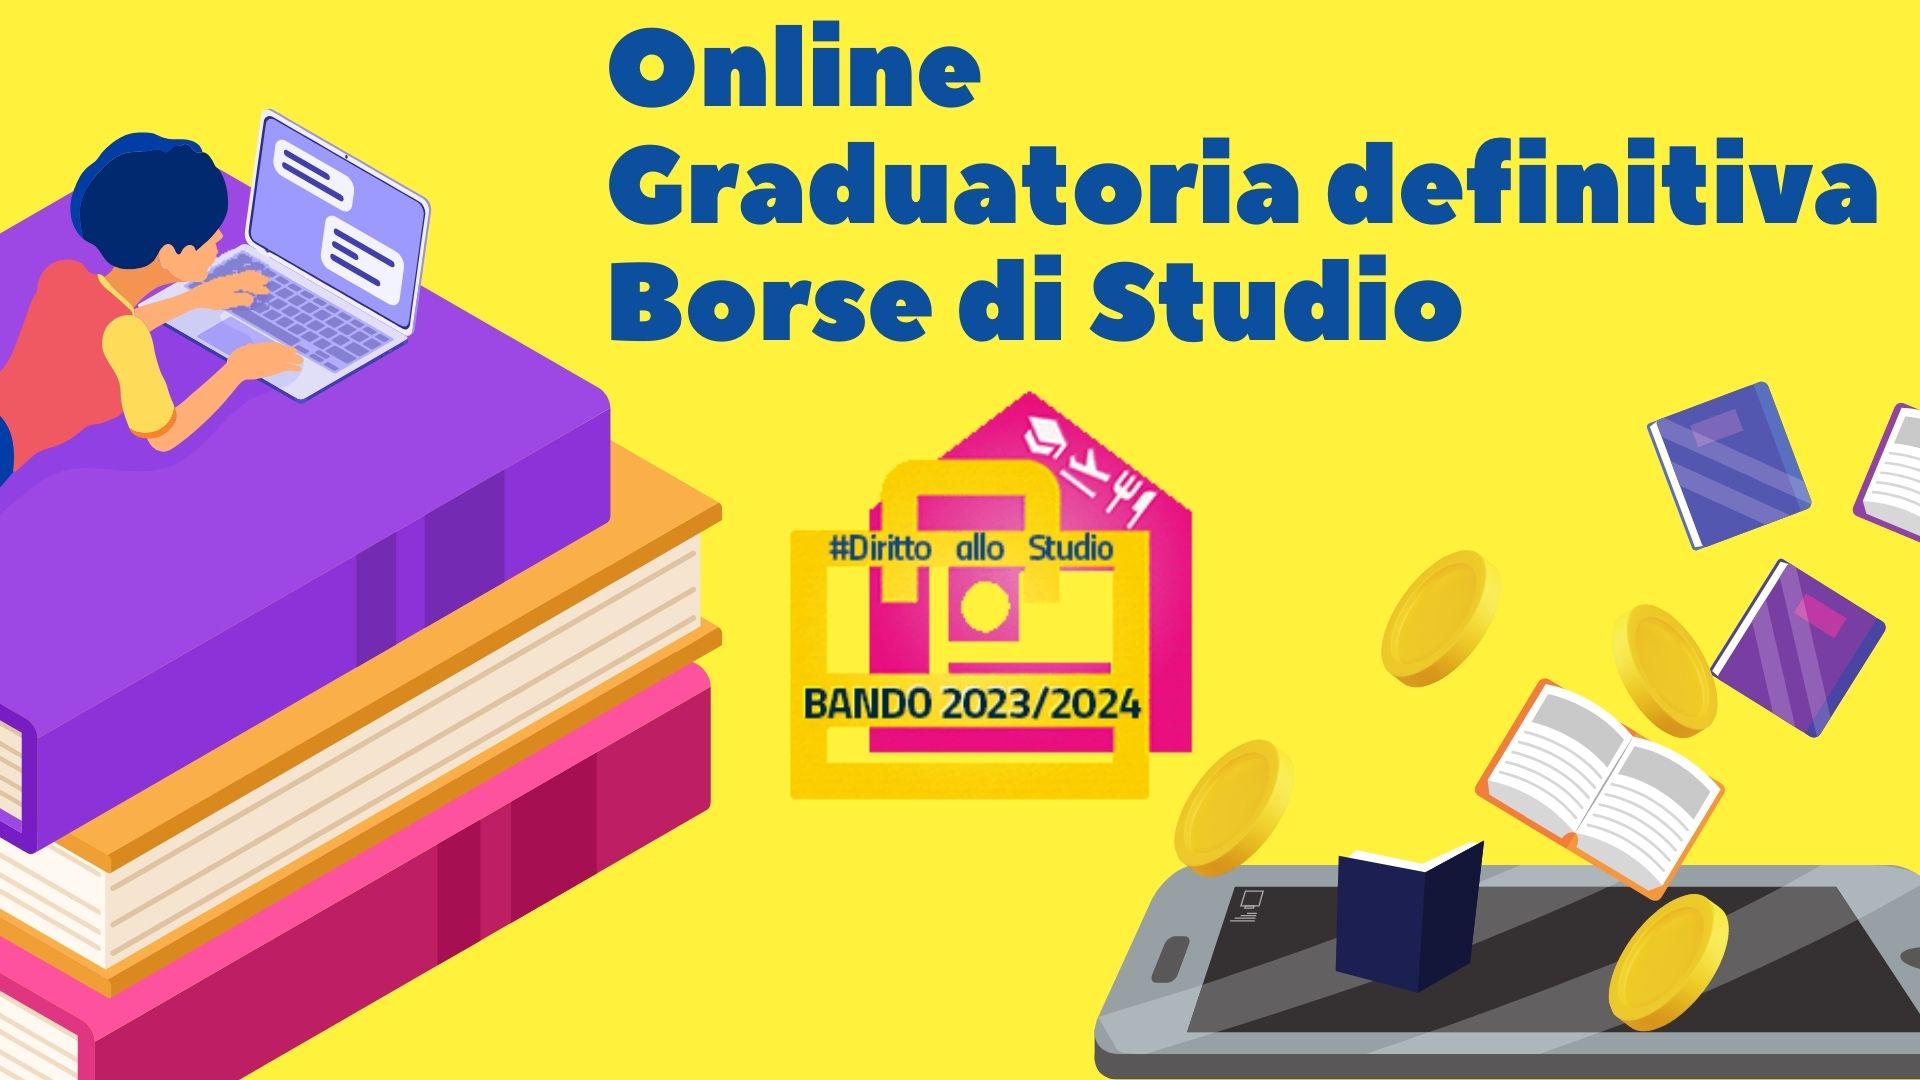 Online la graduatoria definitiva del beneficio Borse di Studio del Bando Diritto allo Studio a.a. 2023/2024.